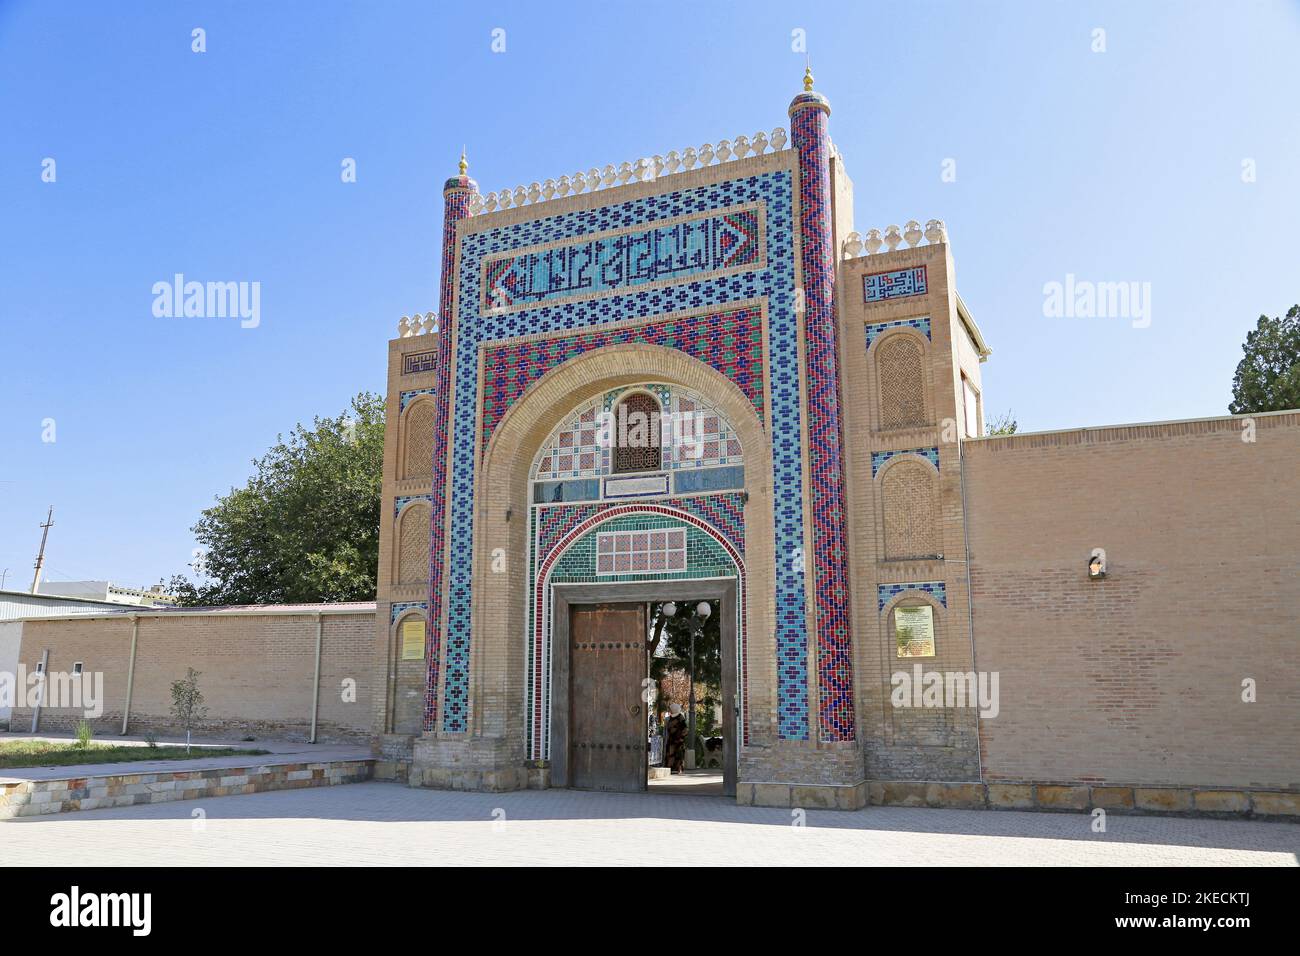 Porte de Sitorai Mokhi Khosa (Palais des étoiles de type Lune) - le dernier Palais d'été d'Emir, Boukhara, province de Boukhara, Ouzbékistan, Asie centrale Banque D'Images